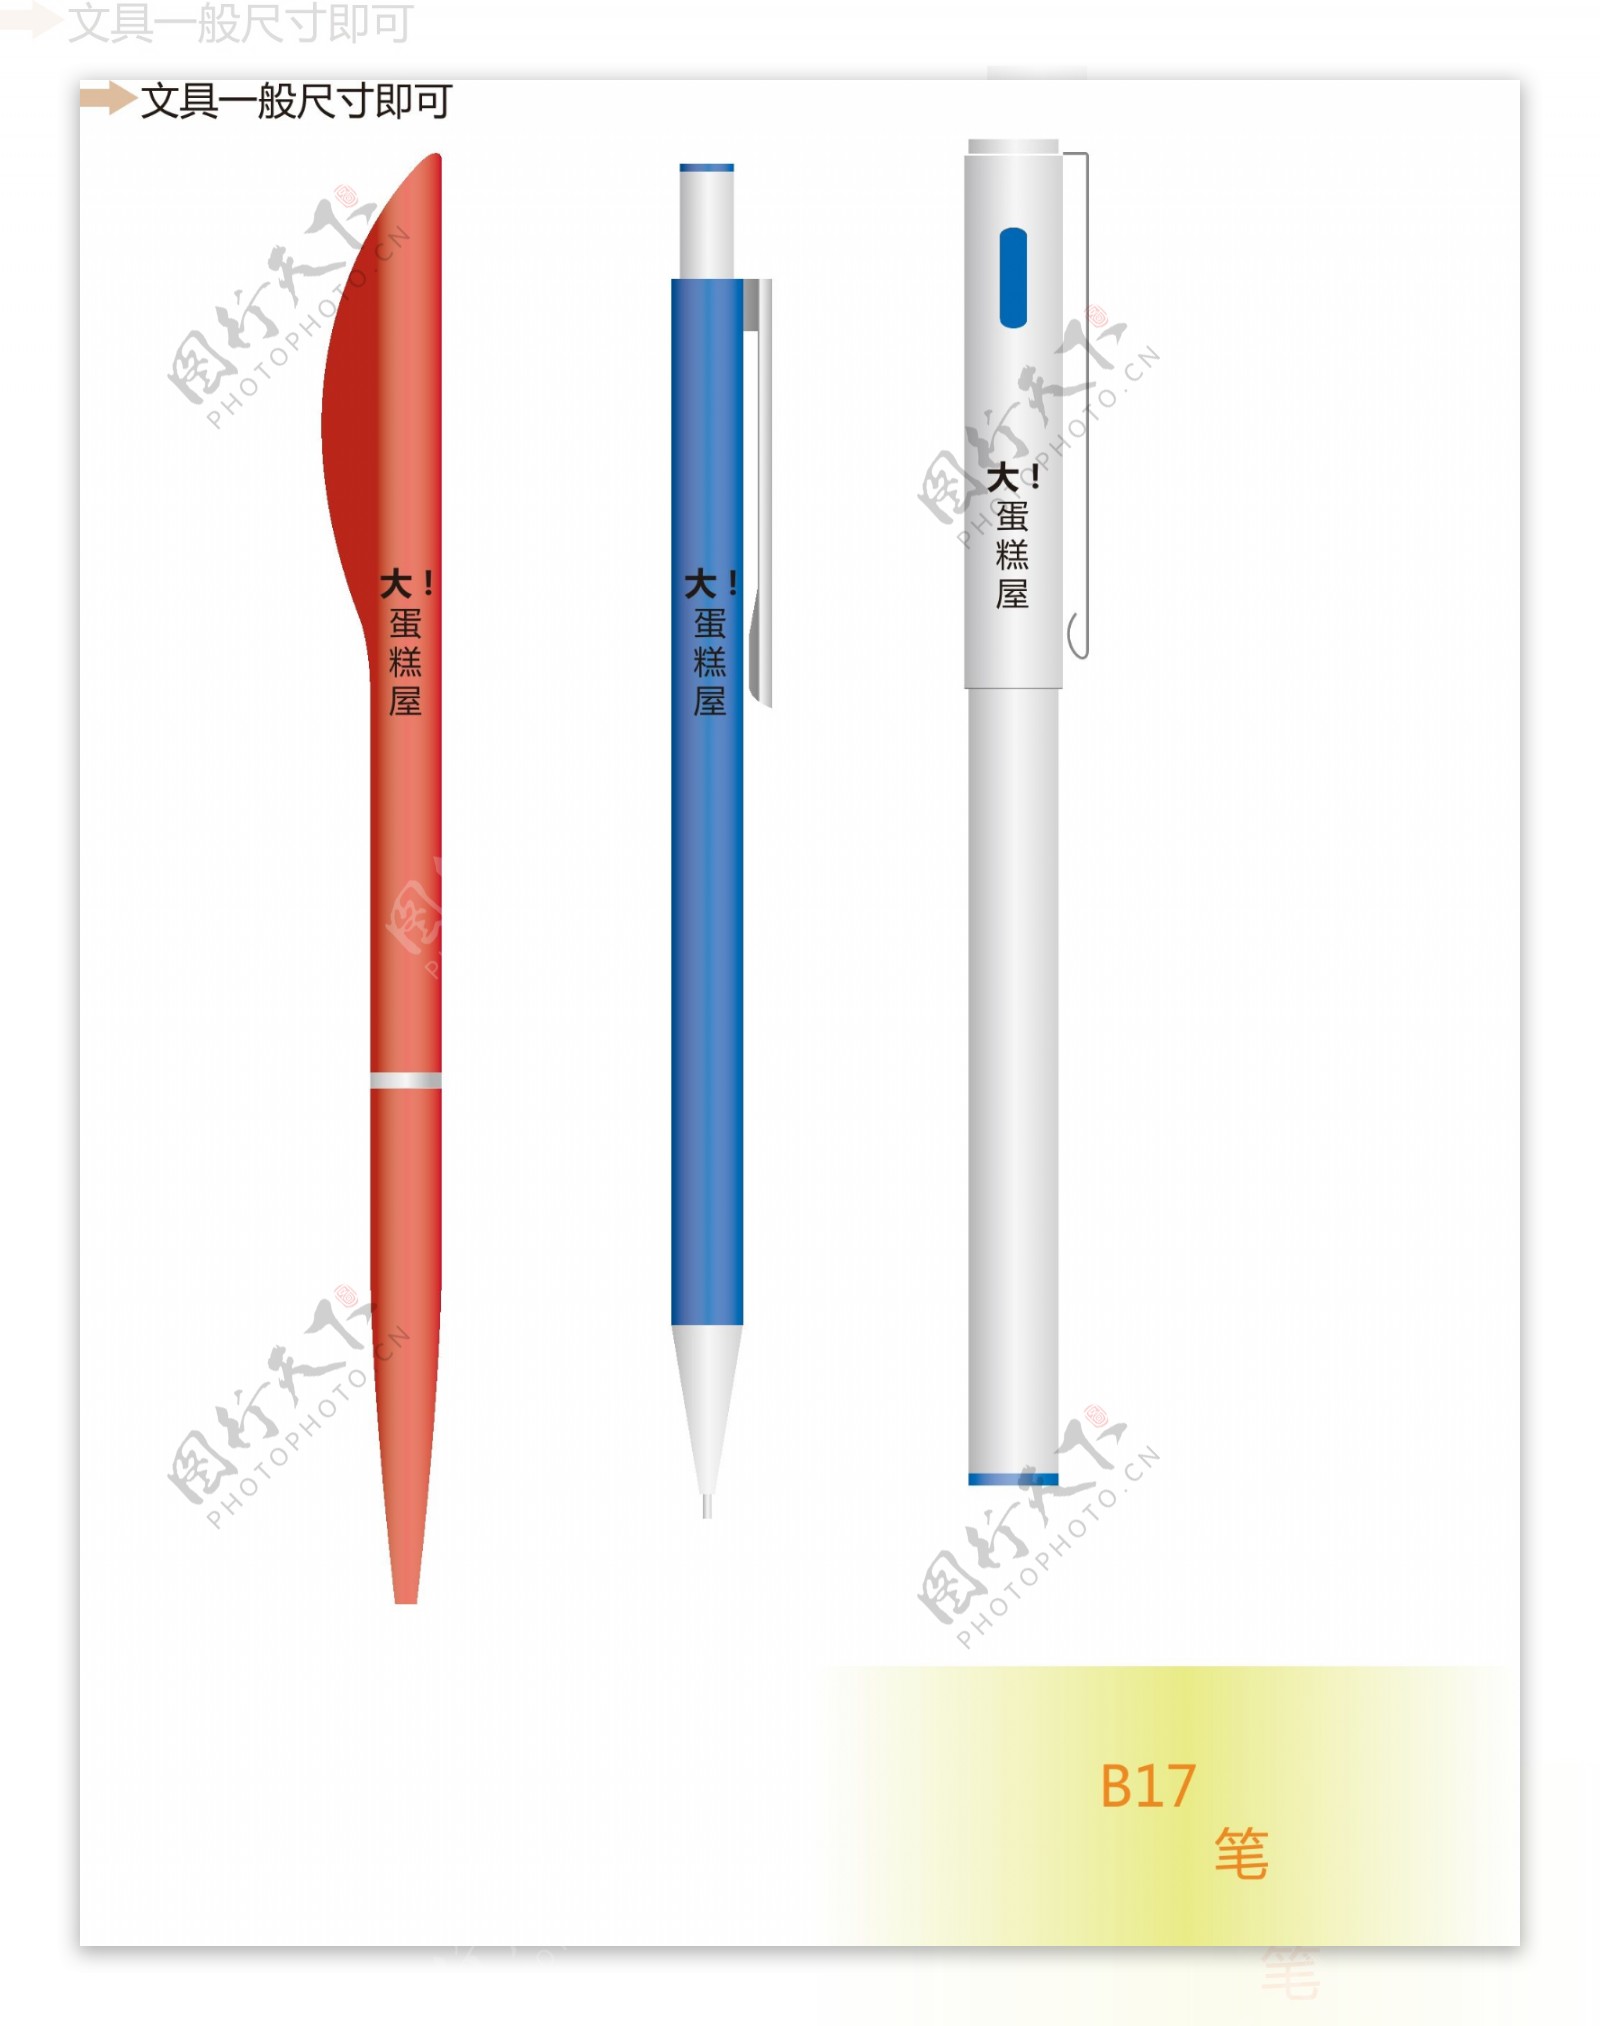 VI设计三色笔